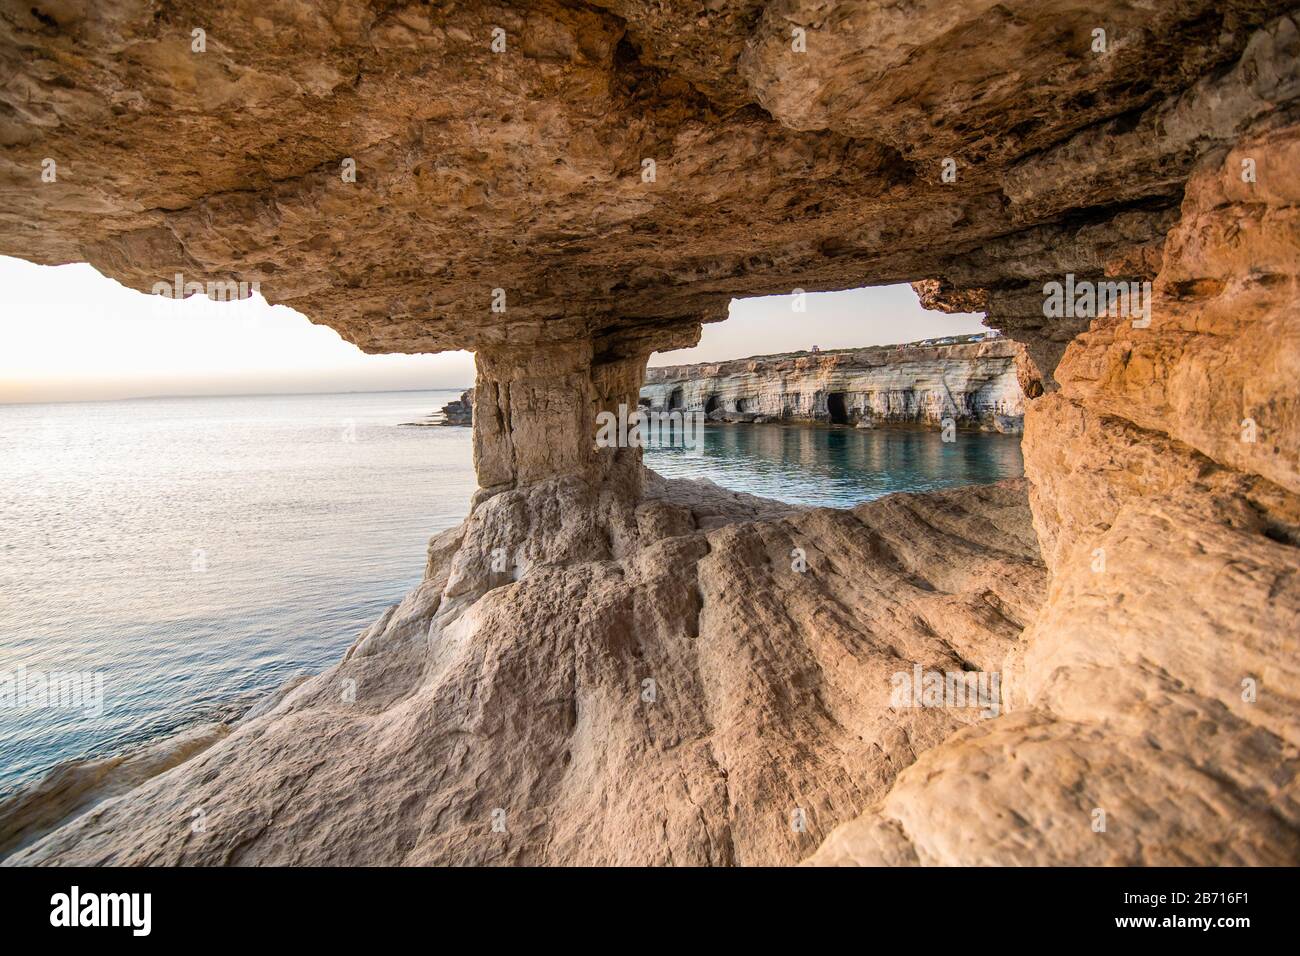 Grotte marine nel parco nazionale di Capo Greko vicino ad Ayia Napa e Protaras sull'isola di Cipro Foto Stock